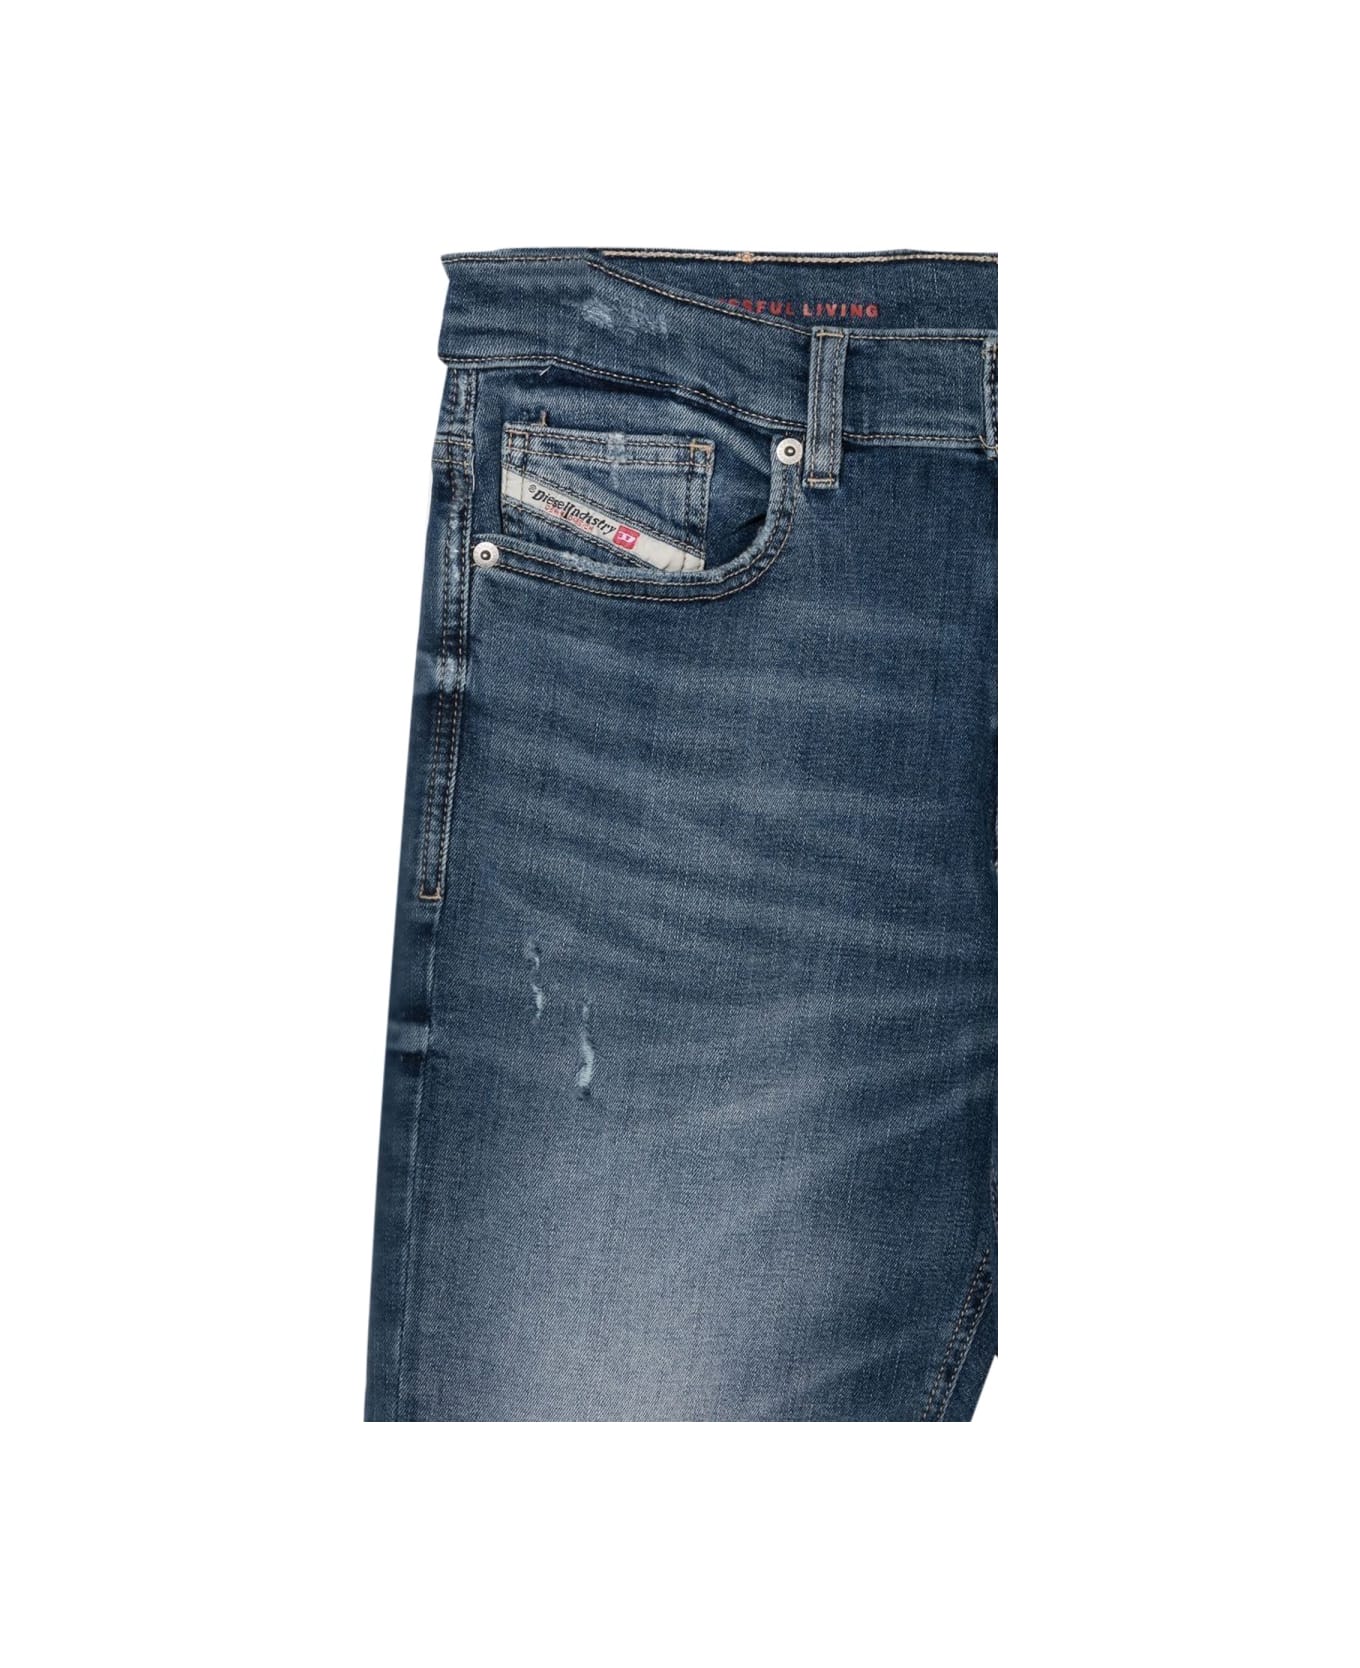 Diesel Lucas Jeans With Patch Breaks - BLUE